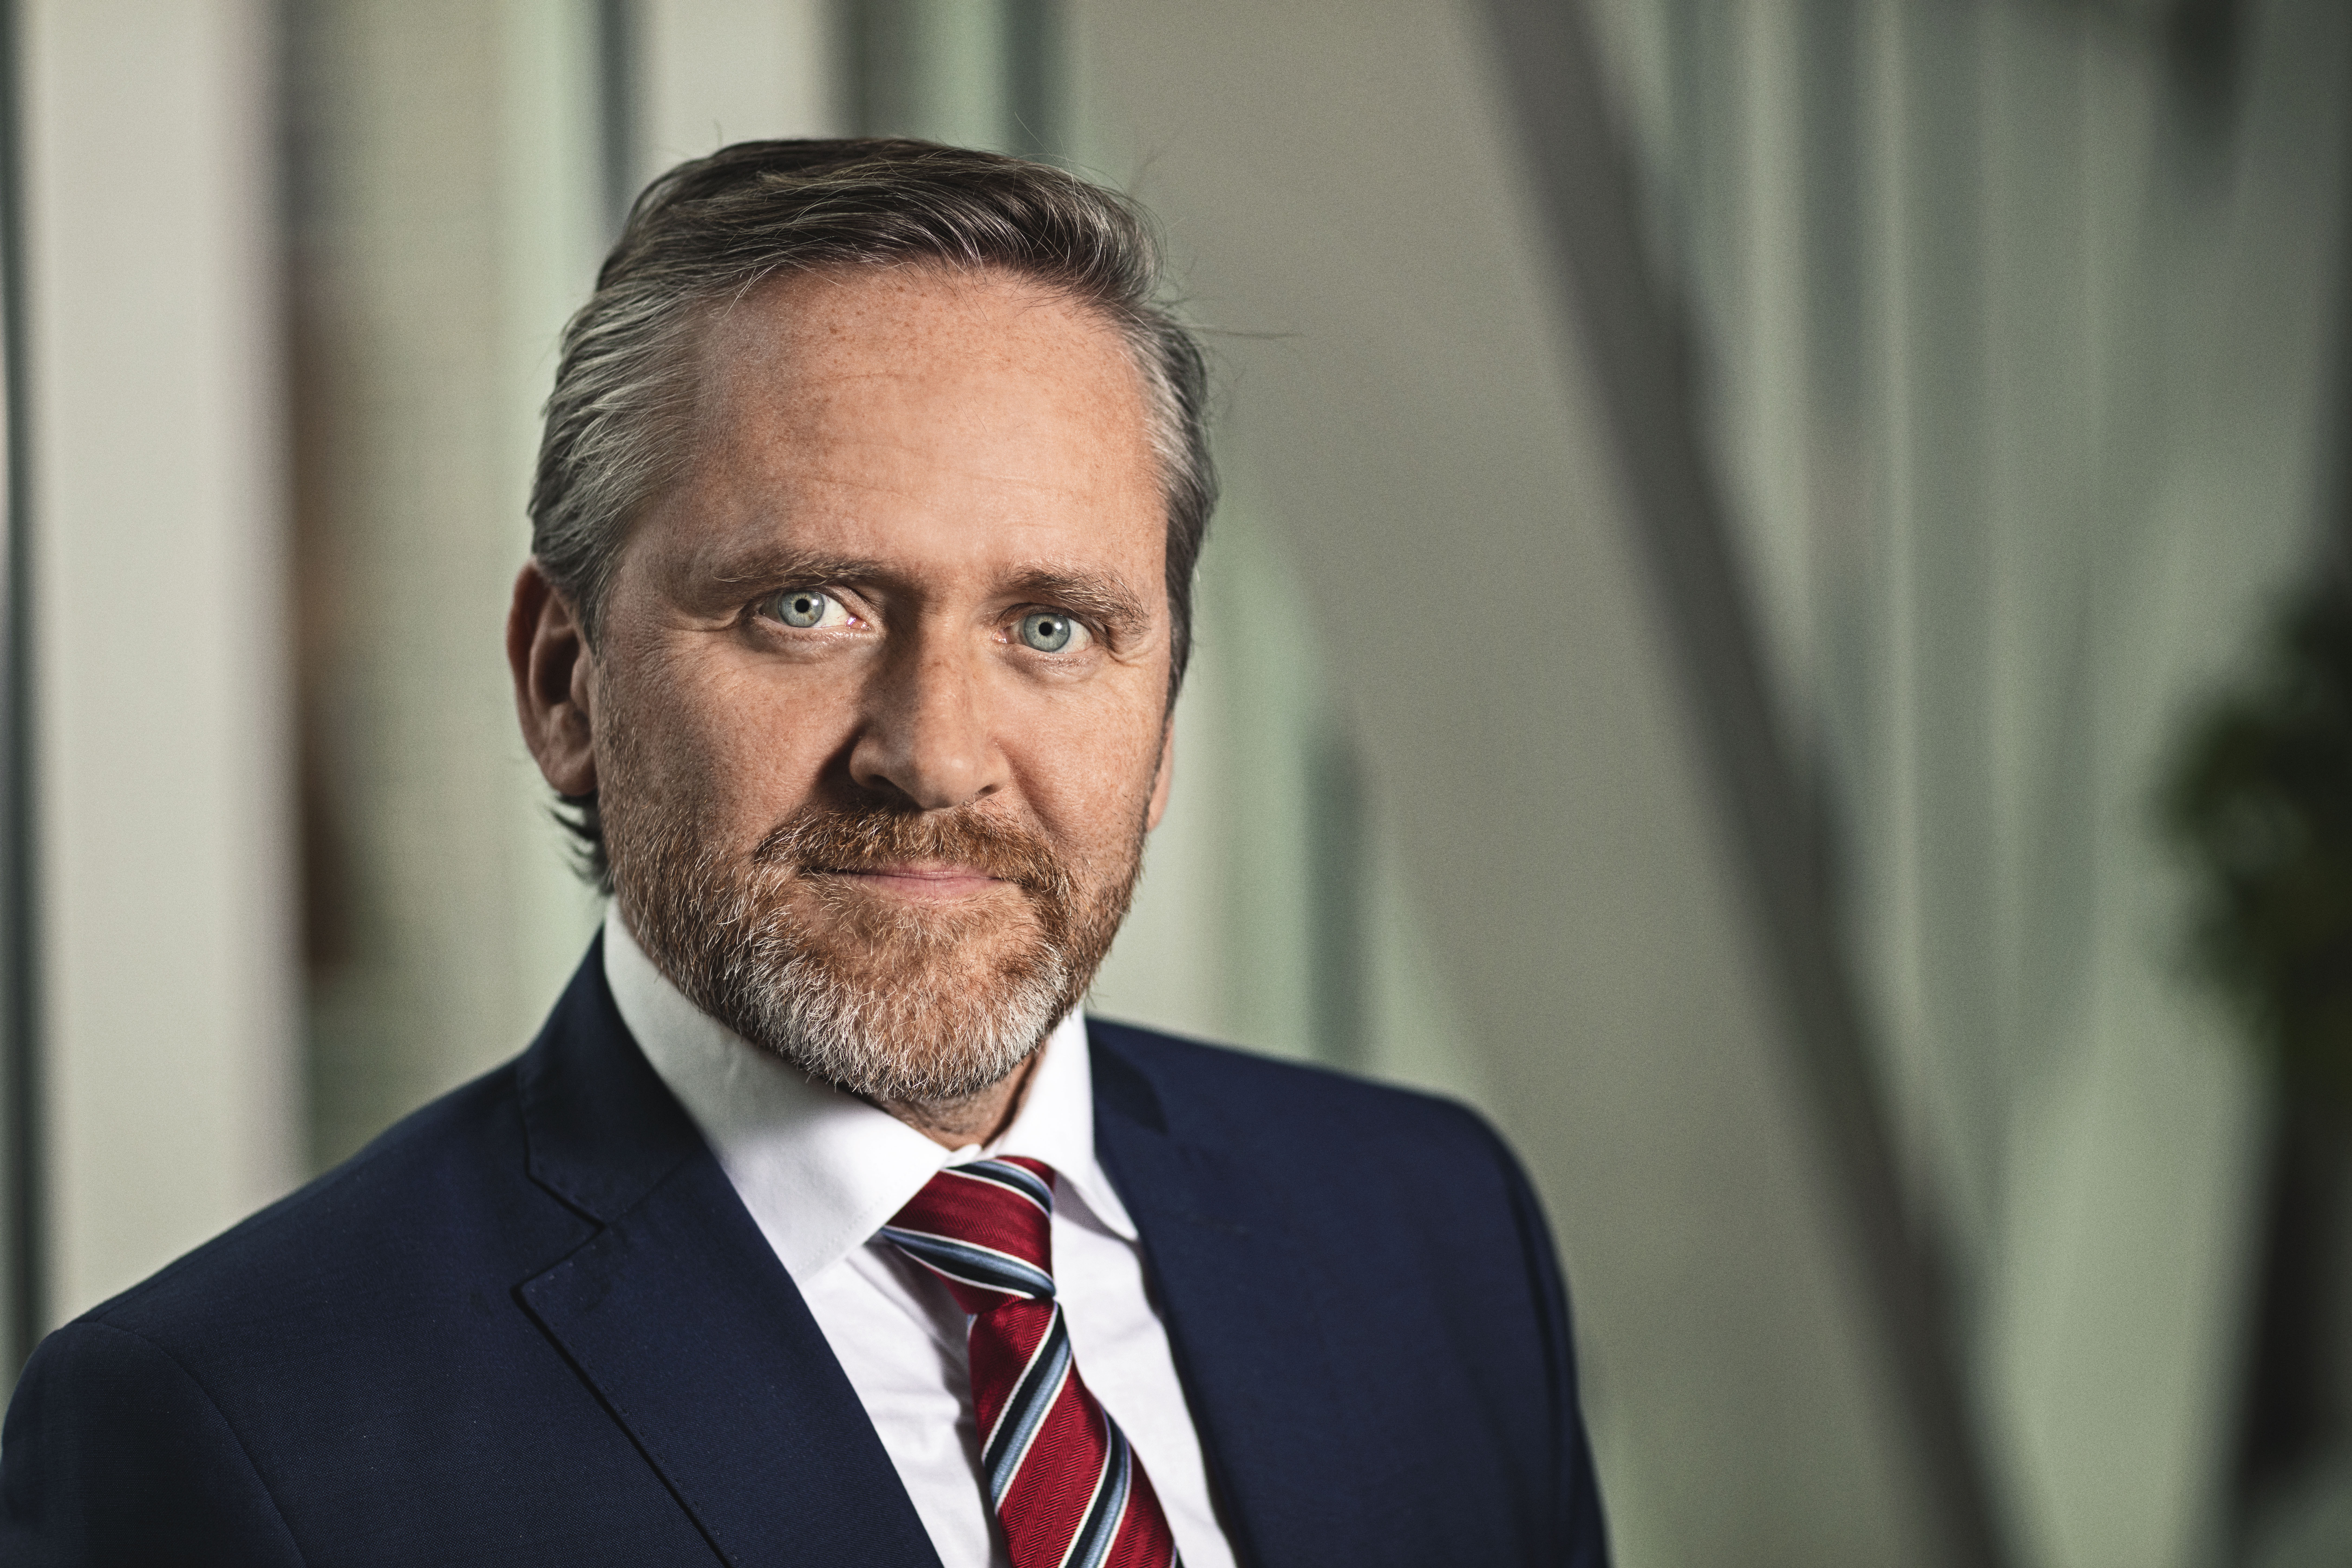 Створення антикорупційного суду – необхідна умова для прогресу, – голова МЗС Данії